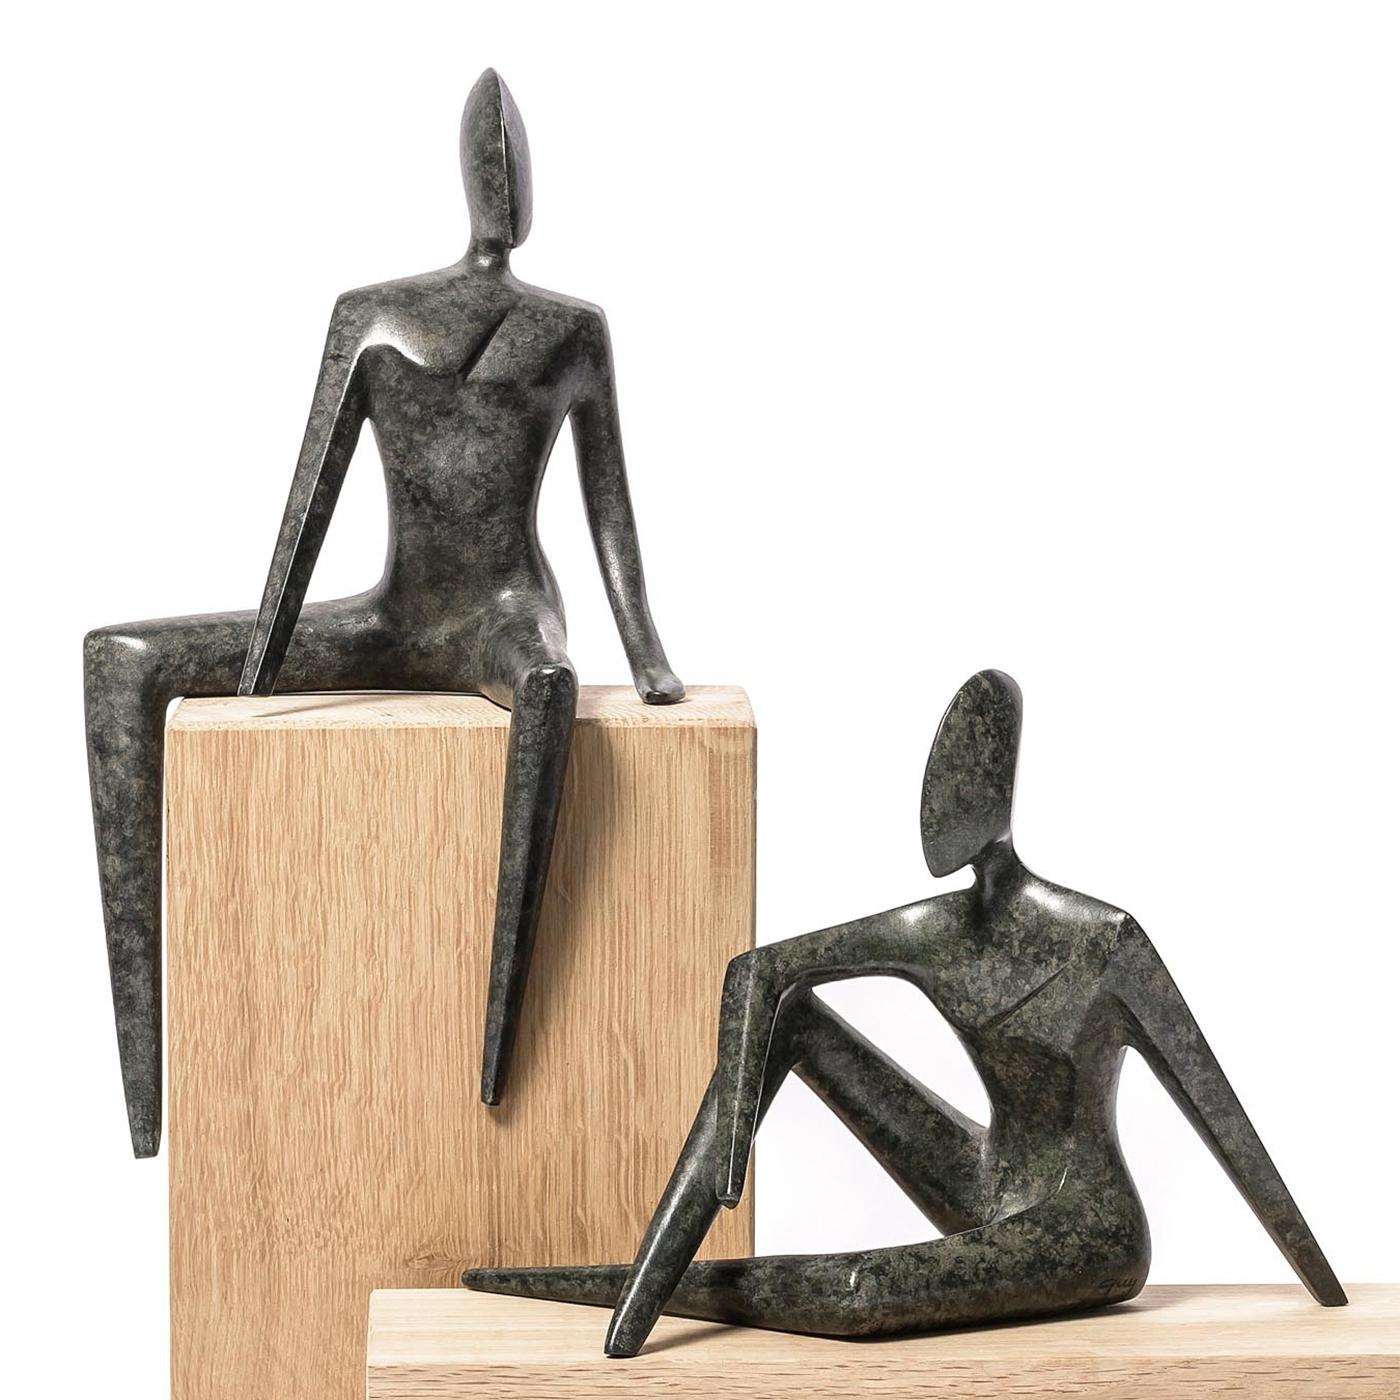 Skulptur Frau und Mann 2er-Set ganz in 
massive Bronze in dunkelgrüner Ausführung.
Frau: L15xT13xH28cm.
Mann: L21xT12xH15cm.
Eichenholzsockel nicht enthalten.